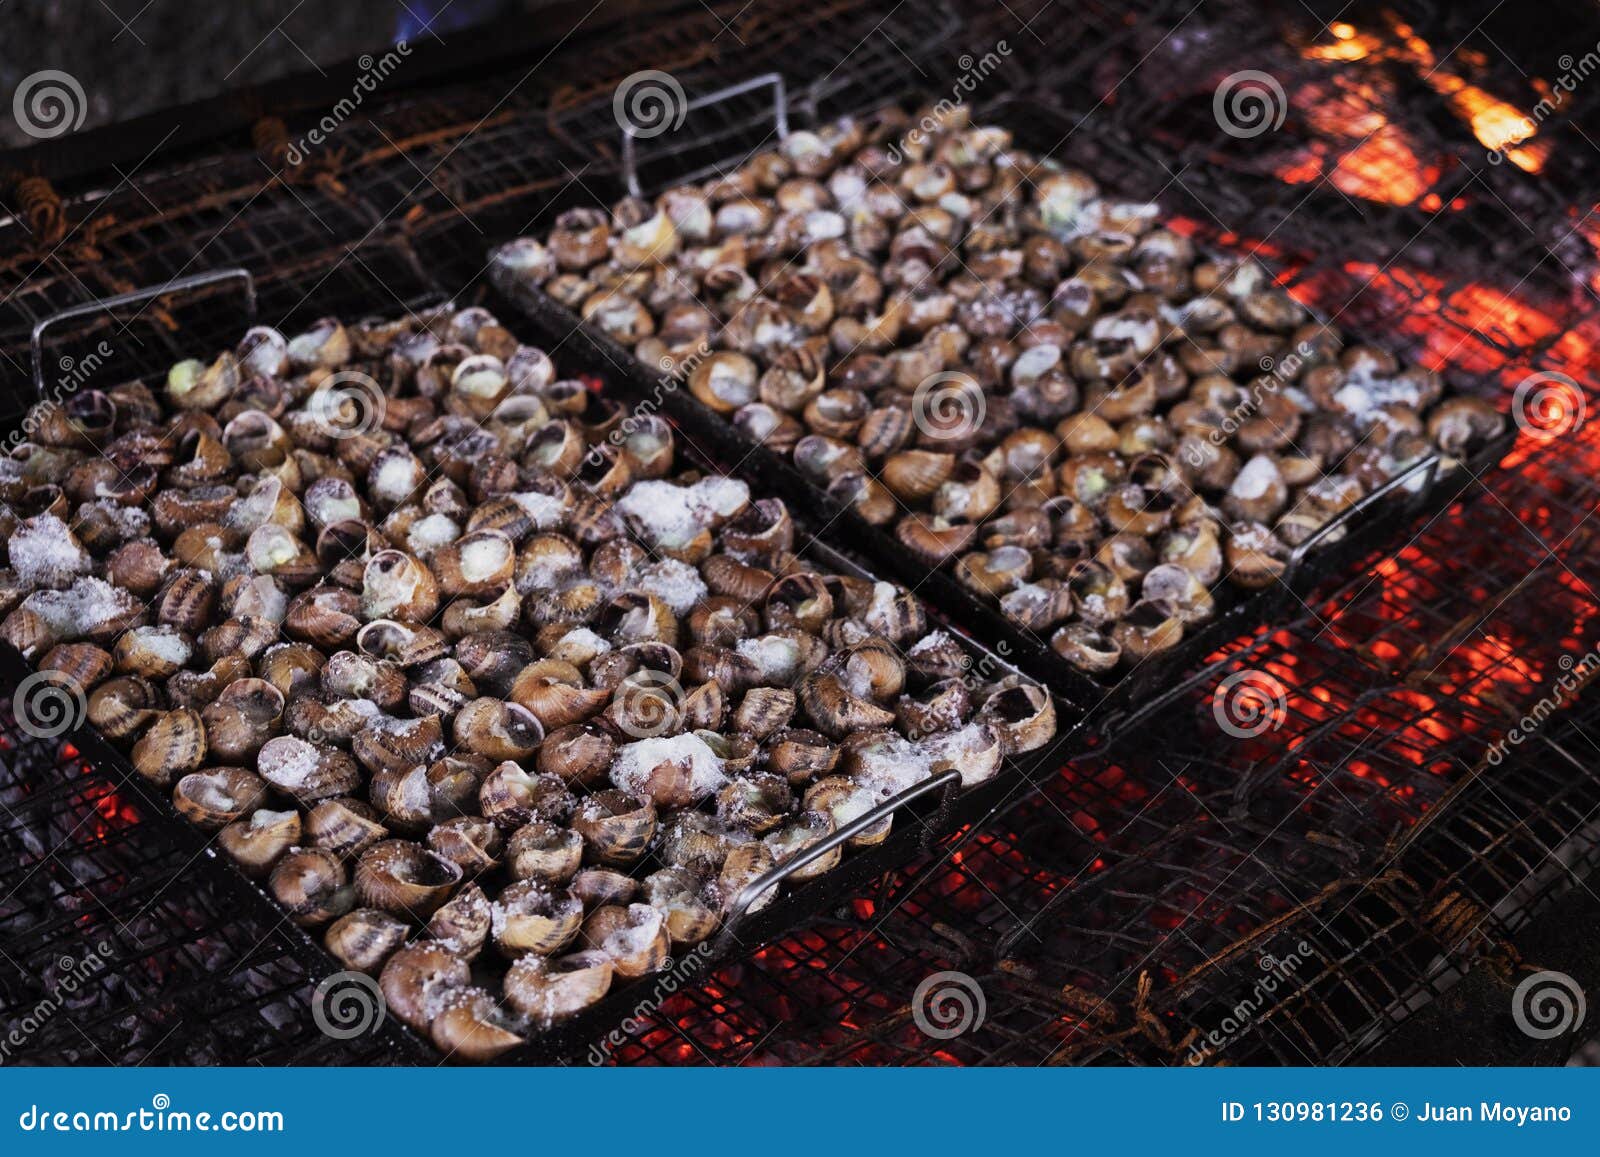 Caragols a La Llauna, Catalan Recipe of Snails Stock Photo - Image of ...